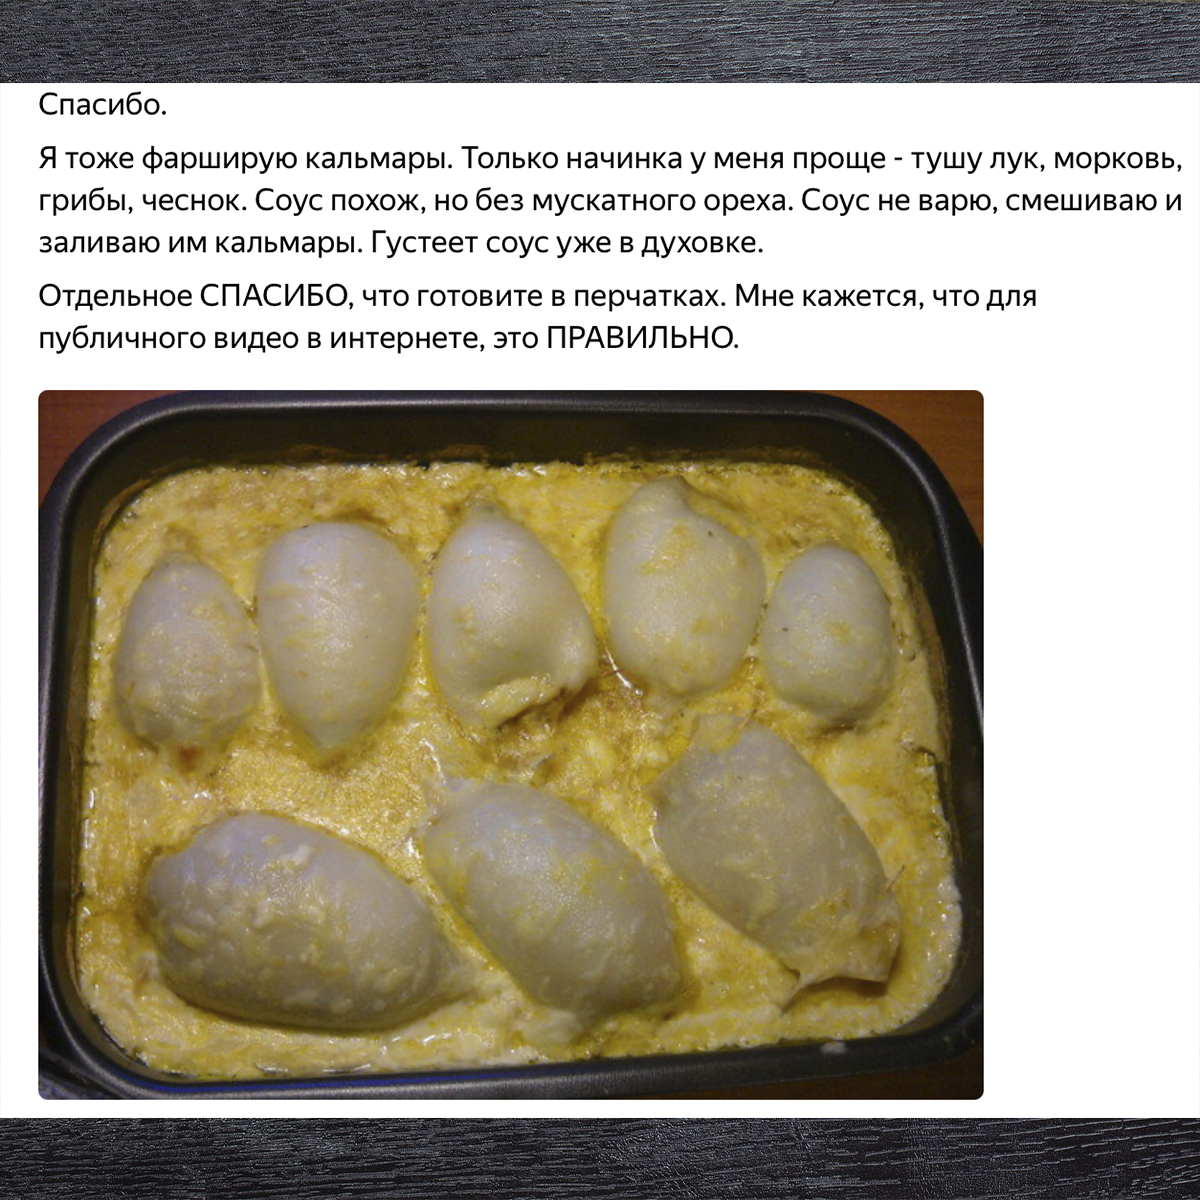 Фаршированные кальмары - пошаговый рецепт с фото на натяжныепотолкибрянск.рф